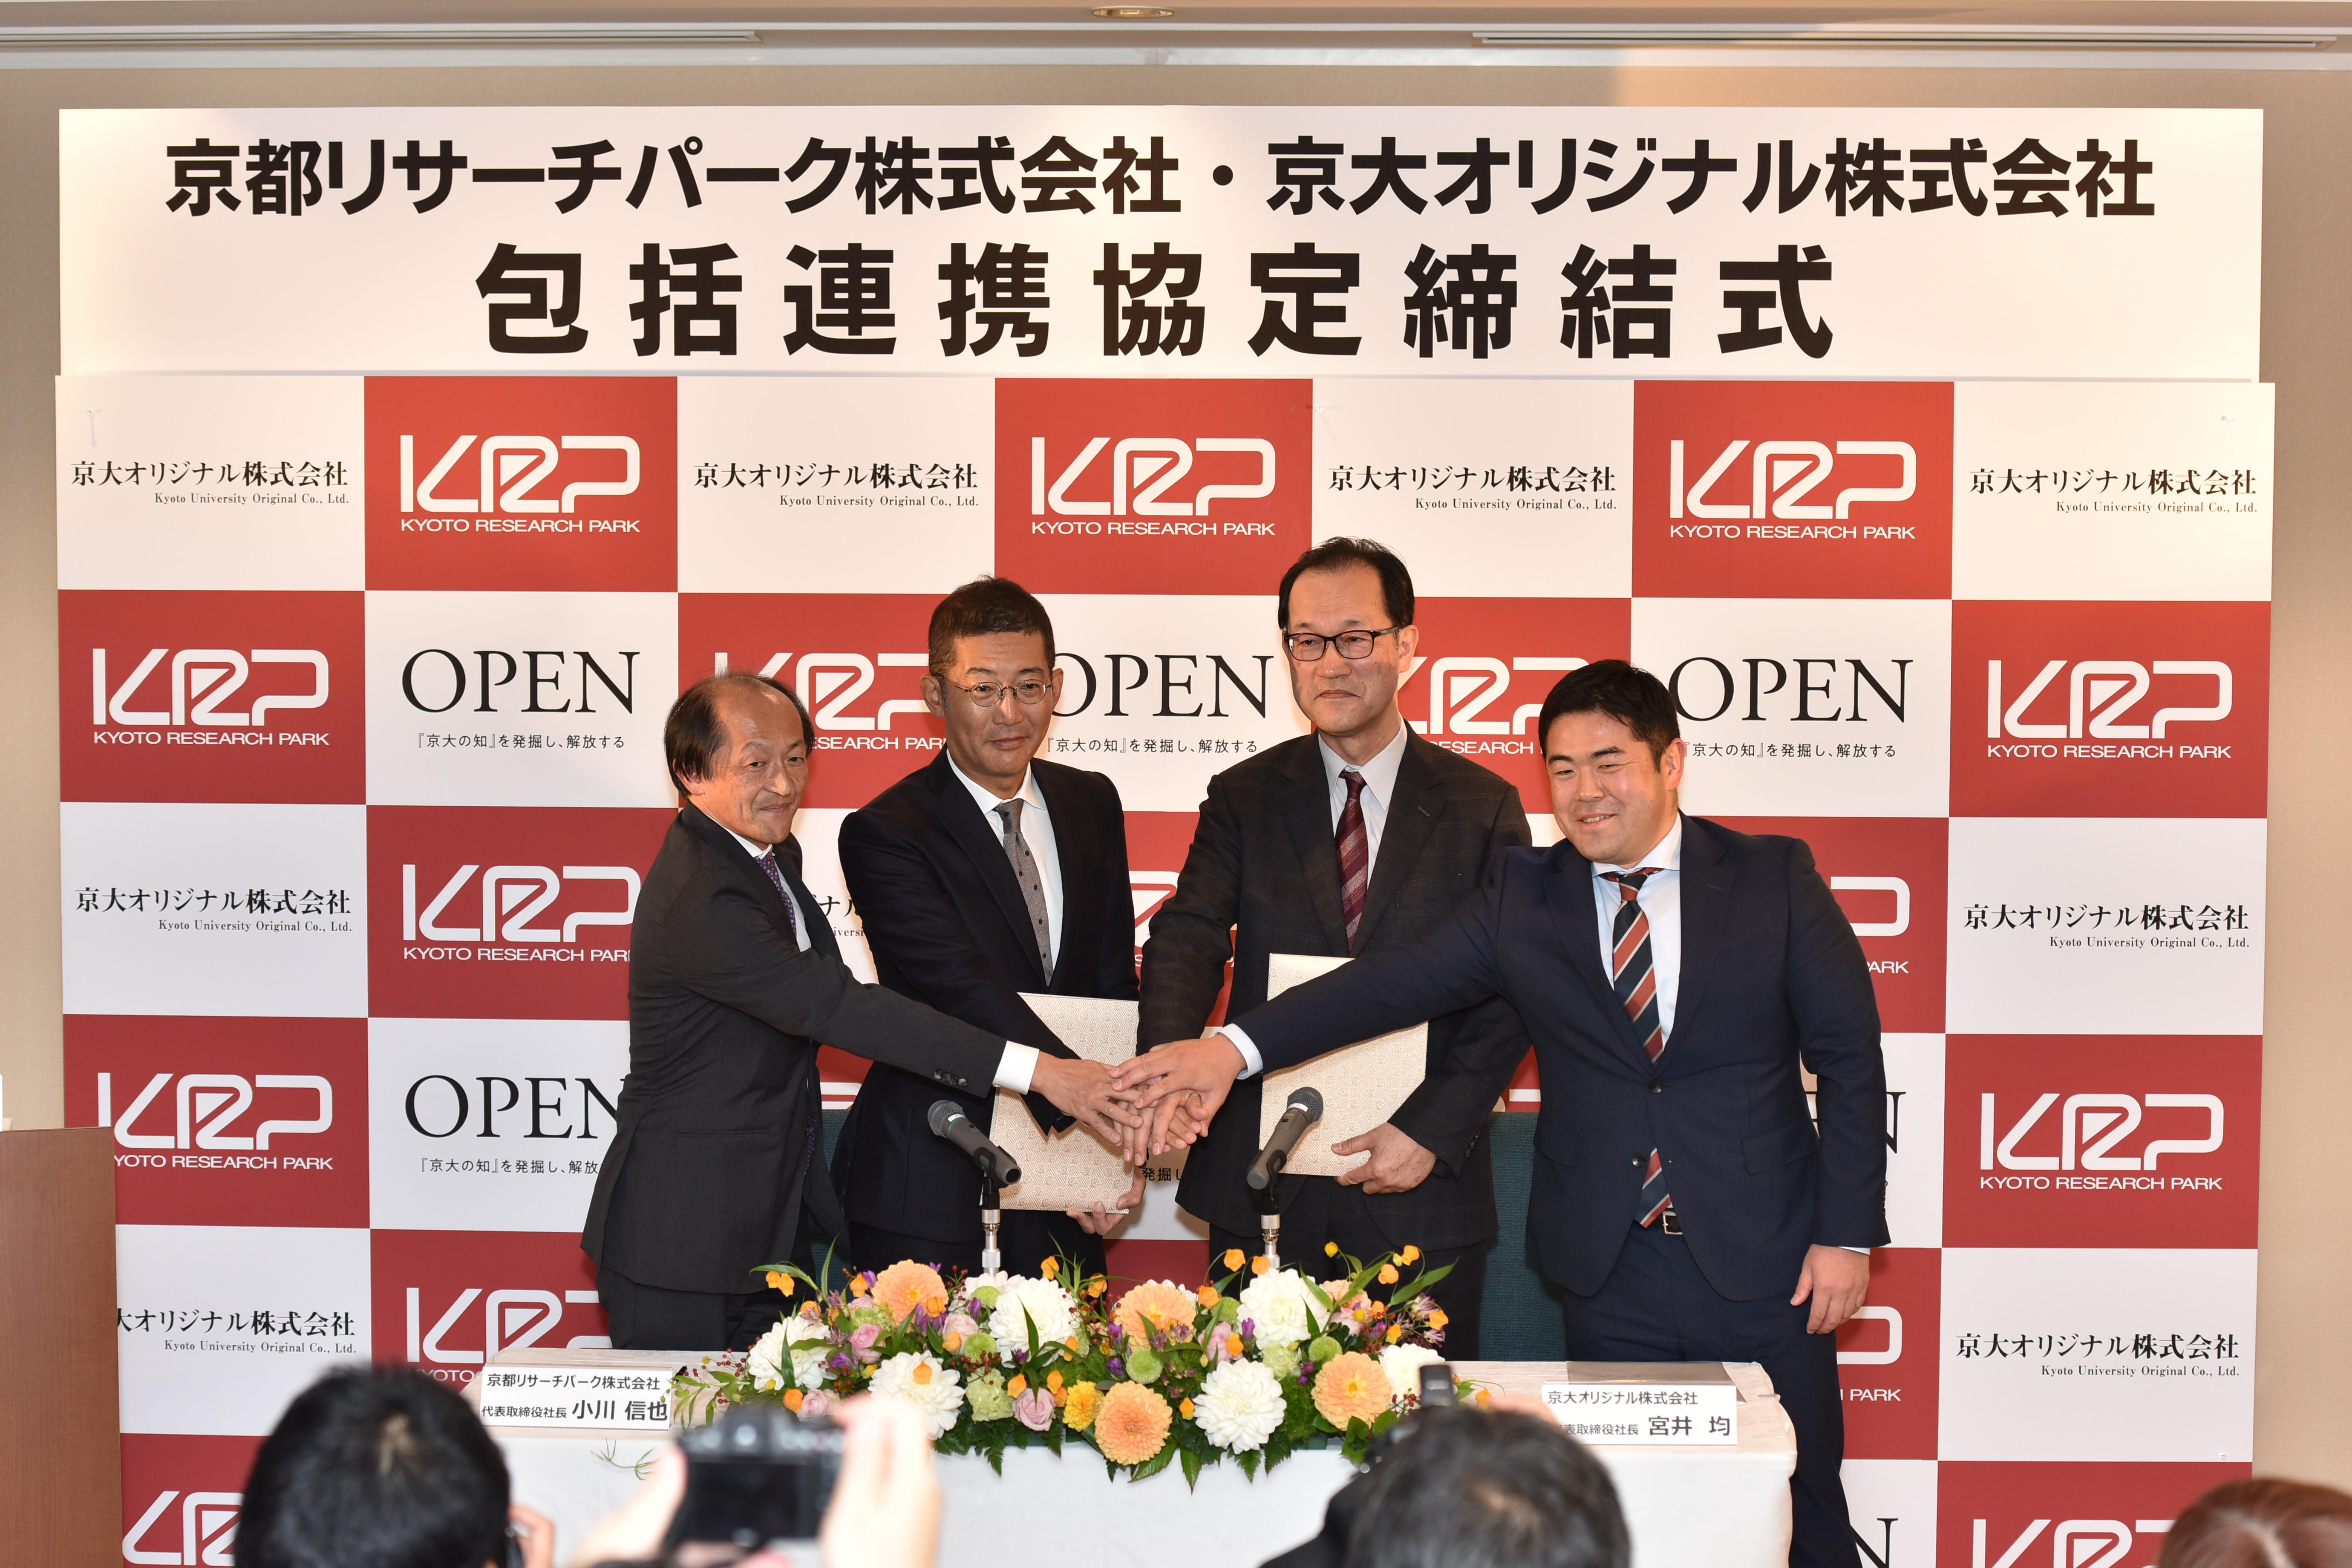 産学連携の促進・オープンイノベーションの活性化を目指し、京都リサーチパーク株式会社と京大オリジナル株式会社が包括連携協定を締結